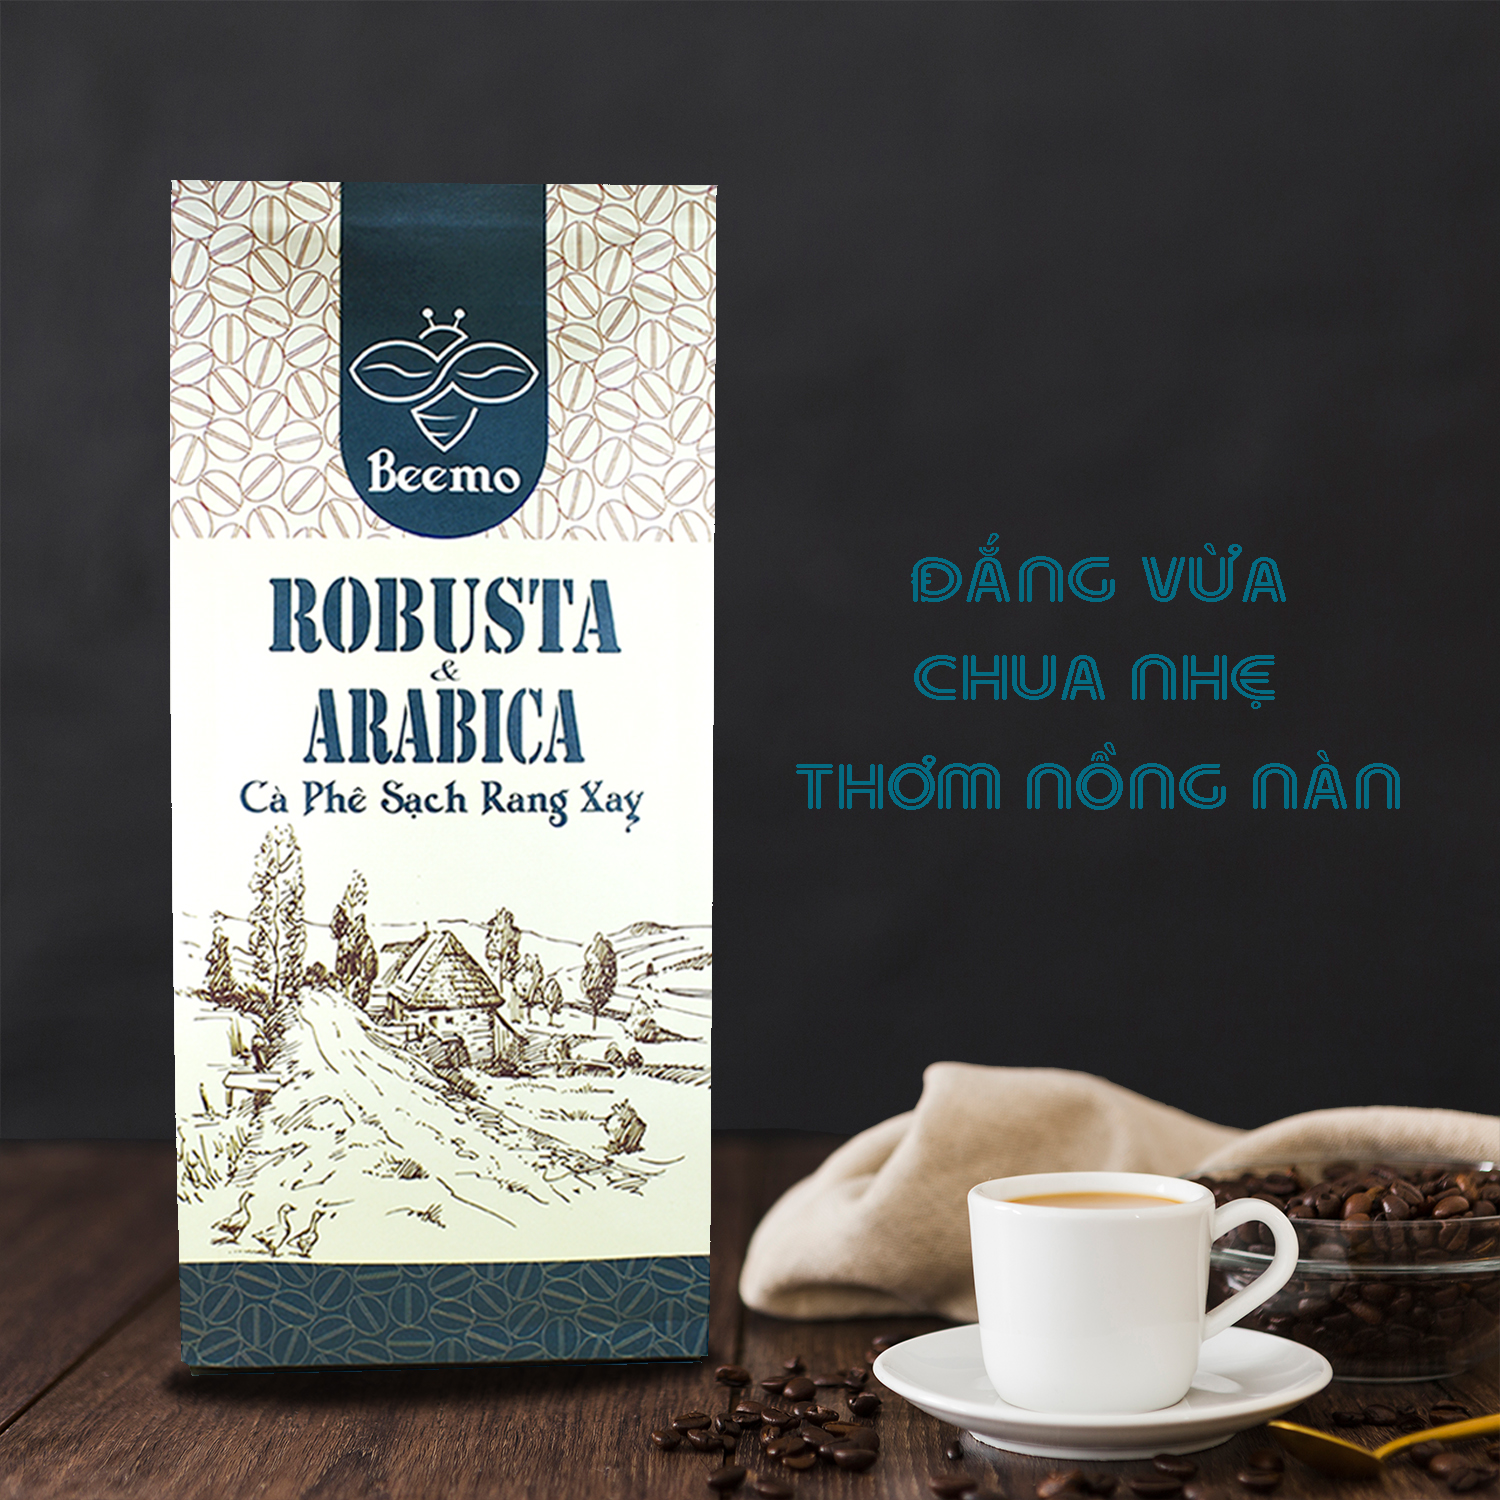 Cà phê nguyên chất Robusta phối Arabica, cafe mộc rang xay Beemo 500g - Đắng vừa, chua nhẹ, thơm nồng nàn